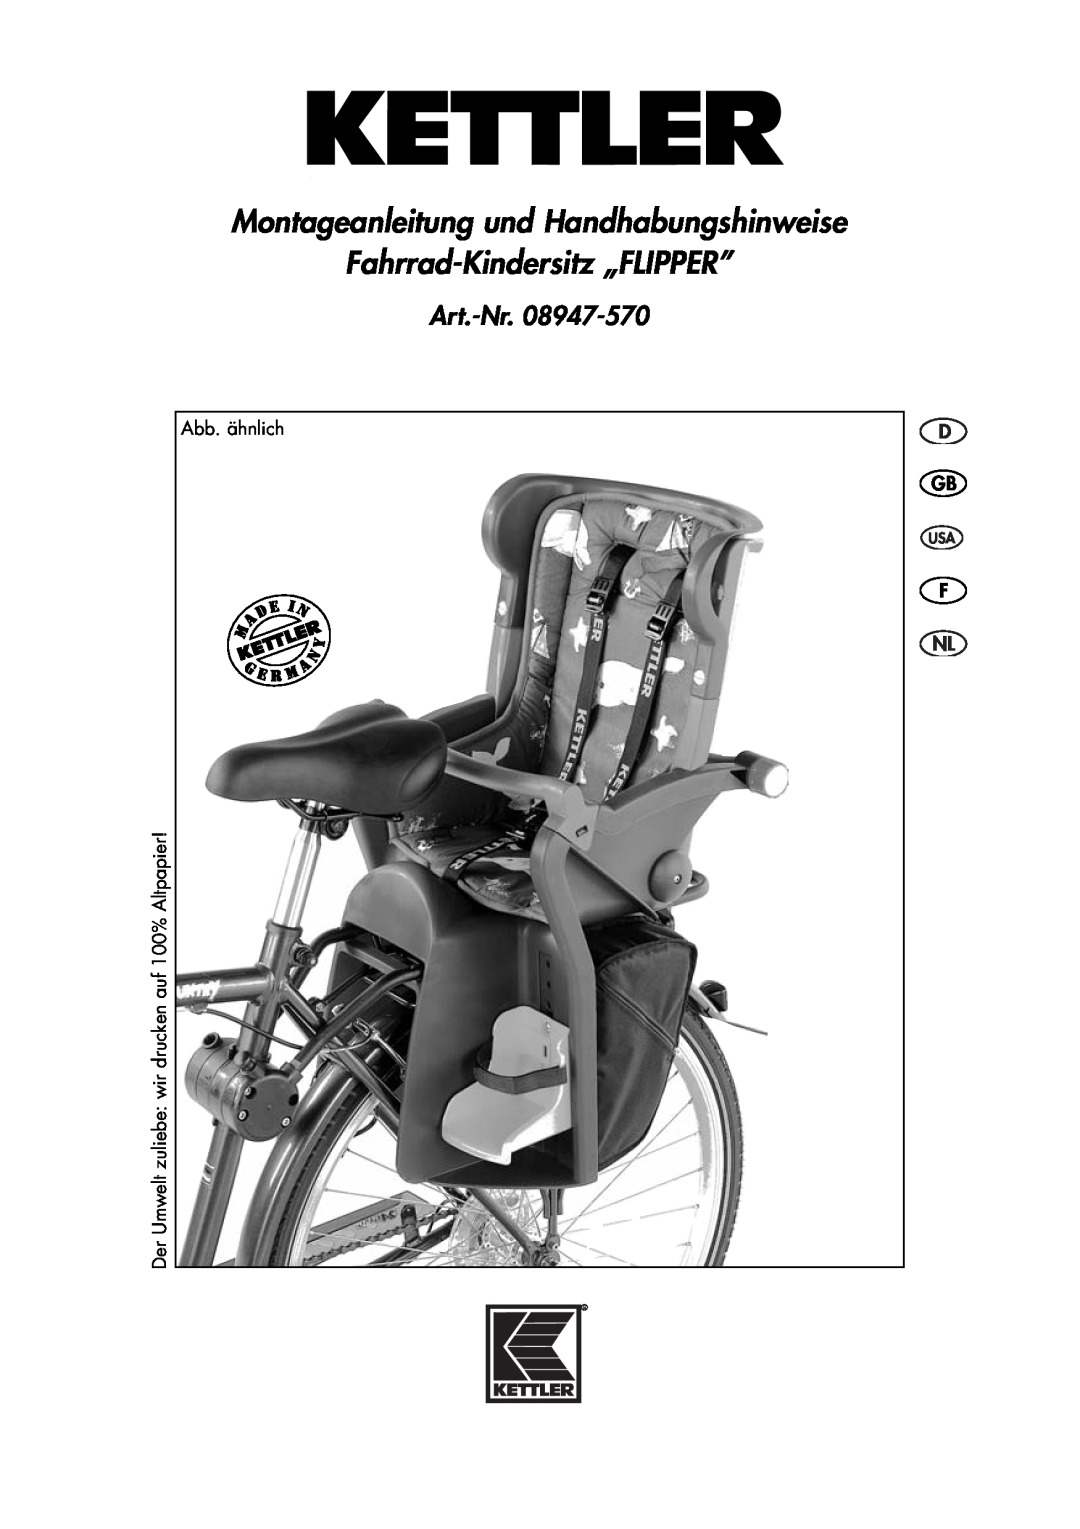 Kettler 08947-570 manual Montageanleitung und Handhabungshinweise Fahrrad-Kindersitz „FLIPPER”, Art.-Nr 